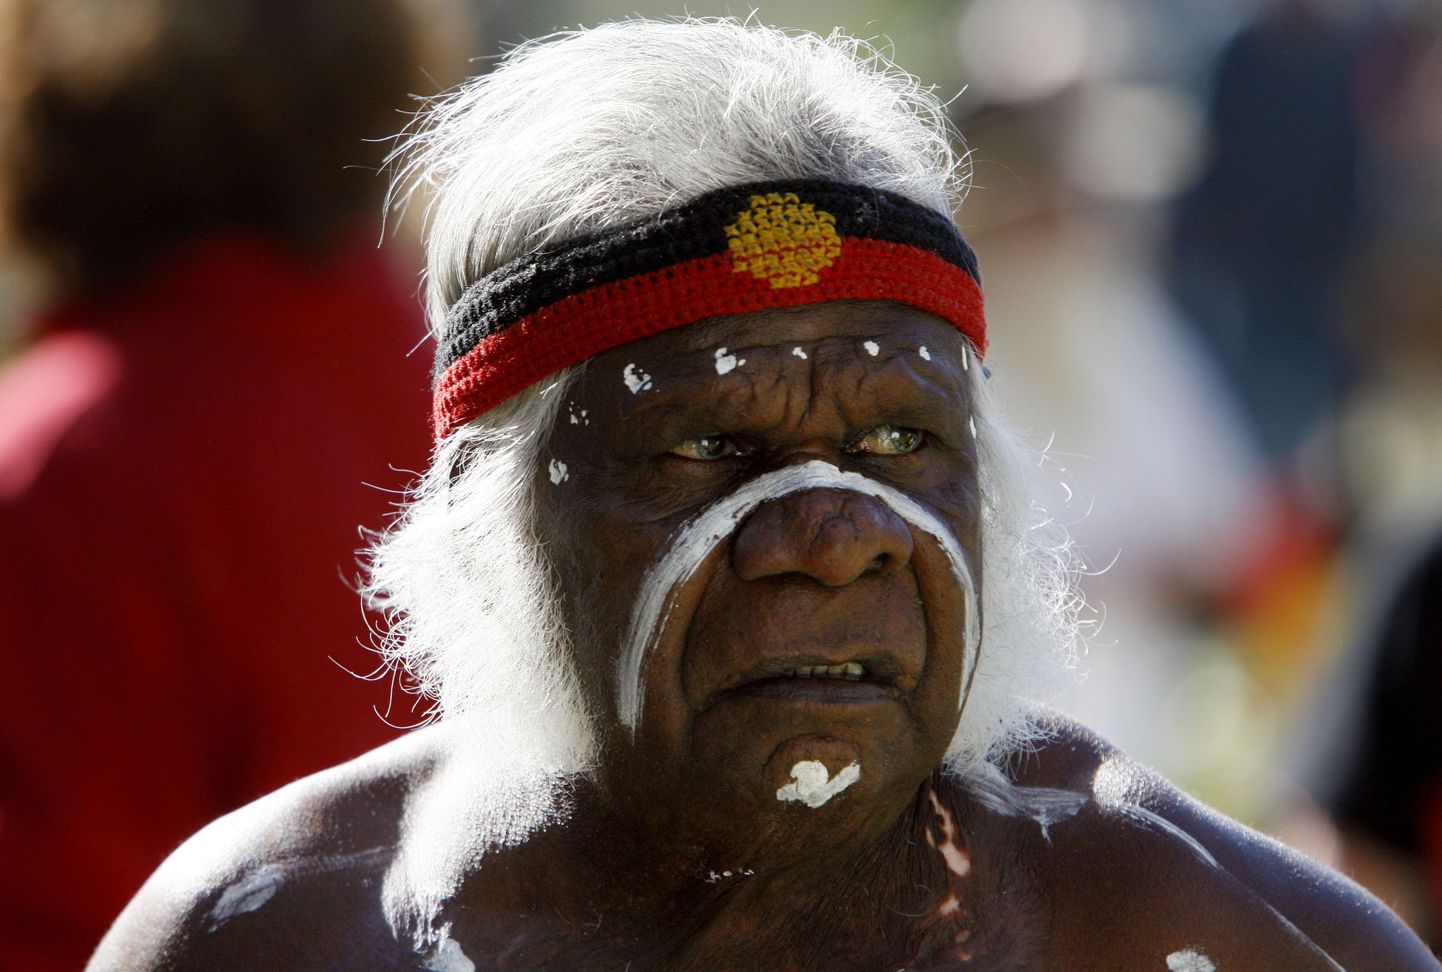 Põliselanike eluiga on ülejäänud rahvastiku omast lühem. Fotol Austraalia aborigeen